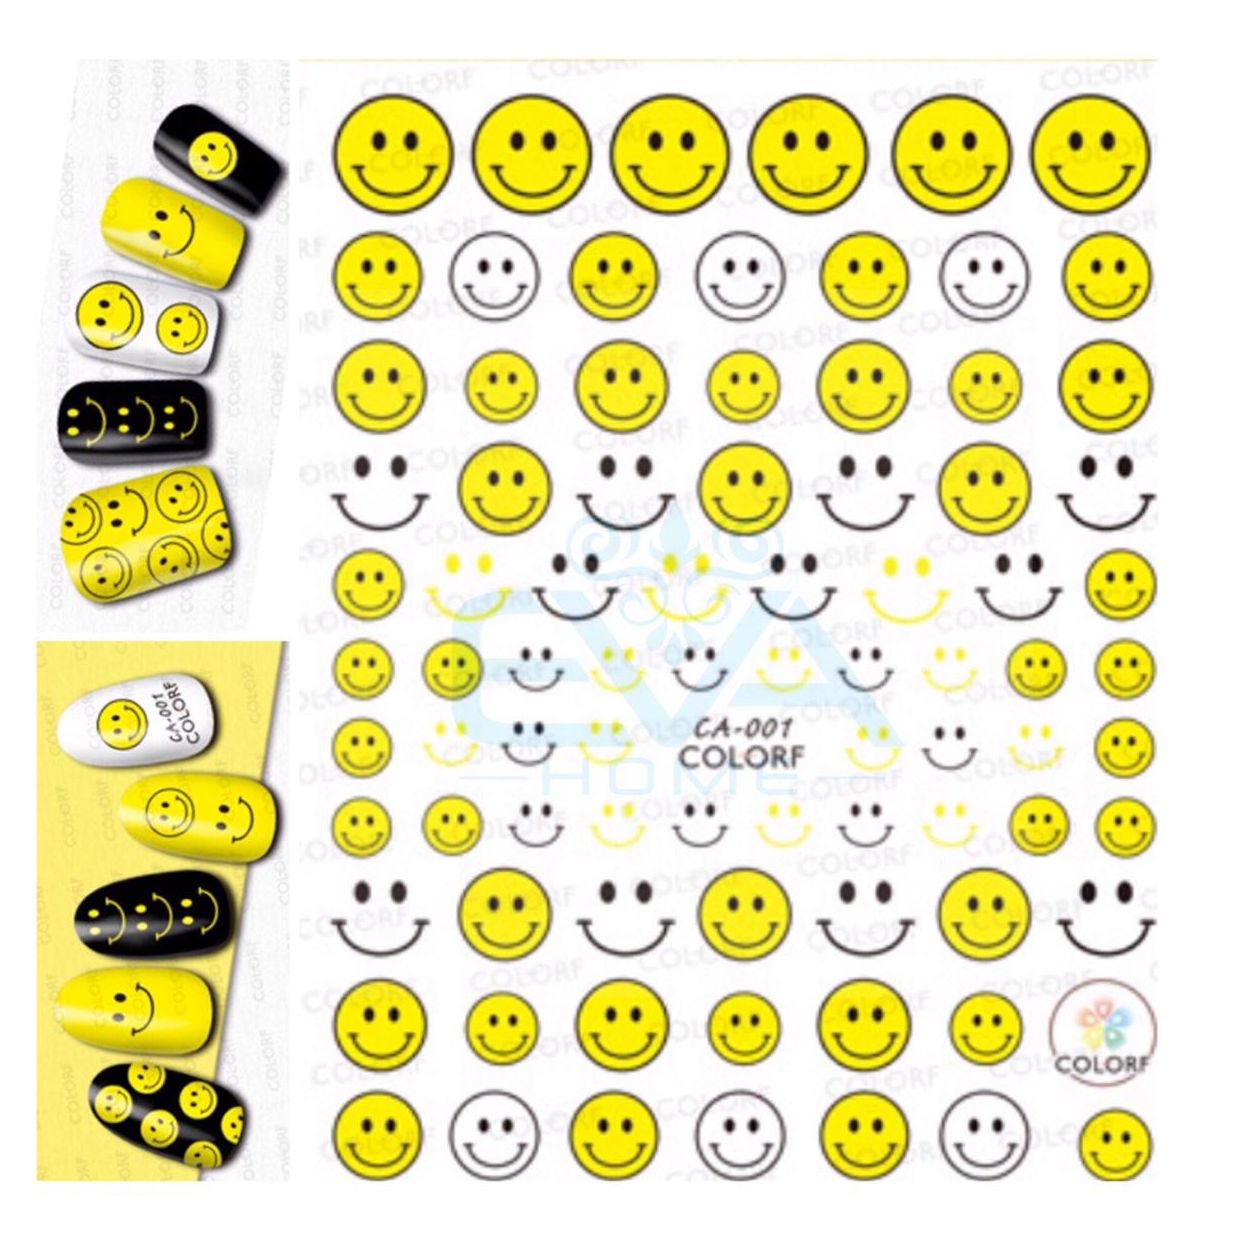 Muốn có thêm niềm vui xúc động trong tin nhắn? Icon Sticker Mặt Cười sẽ giúp bạn tạo ra những trải nghiệm mới mẻ và vui tươi hơn trong giao tiếp. Hãy xem hình để khám phá ra những biểu tượng Mặt Cười đáng yêu và dễ dàng sử dụng này!